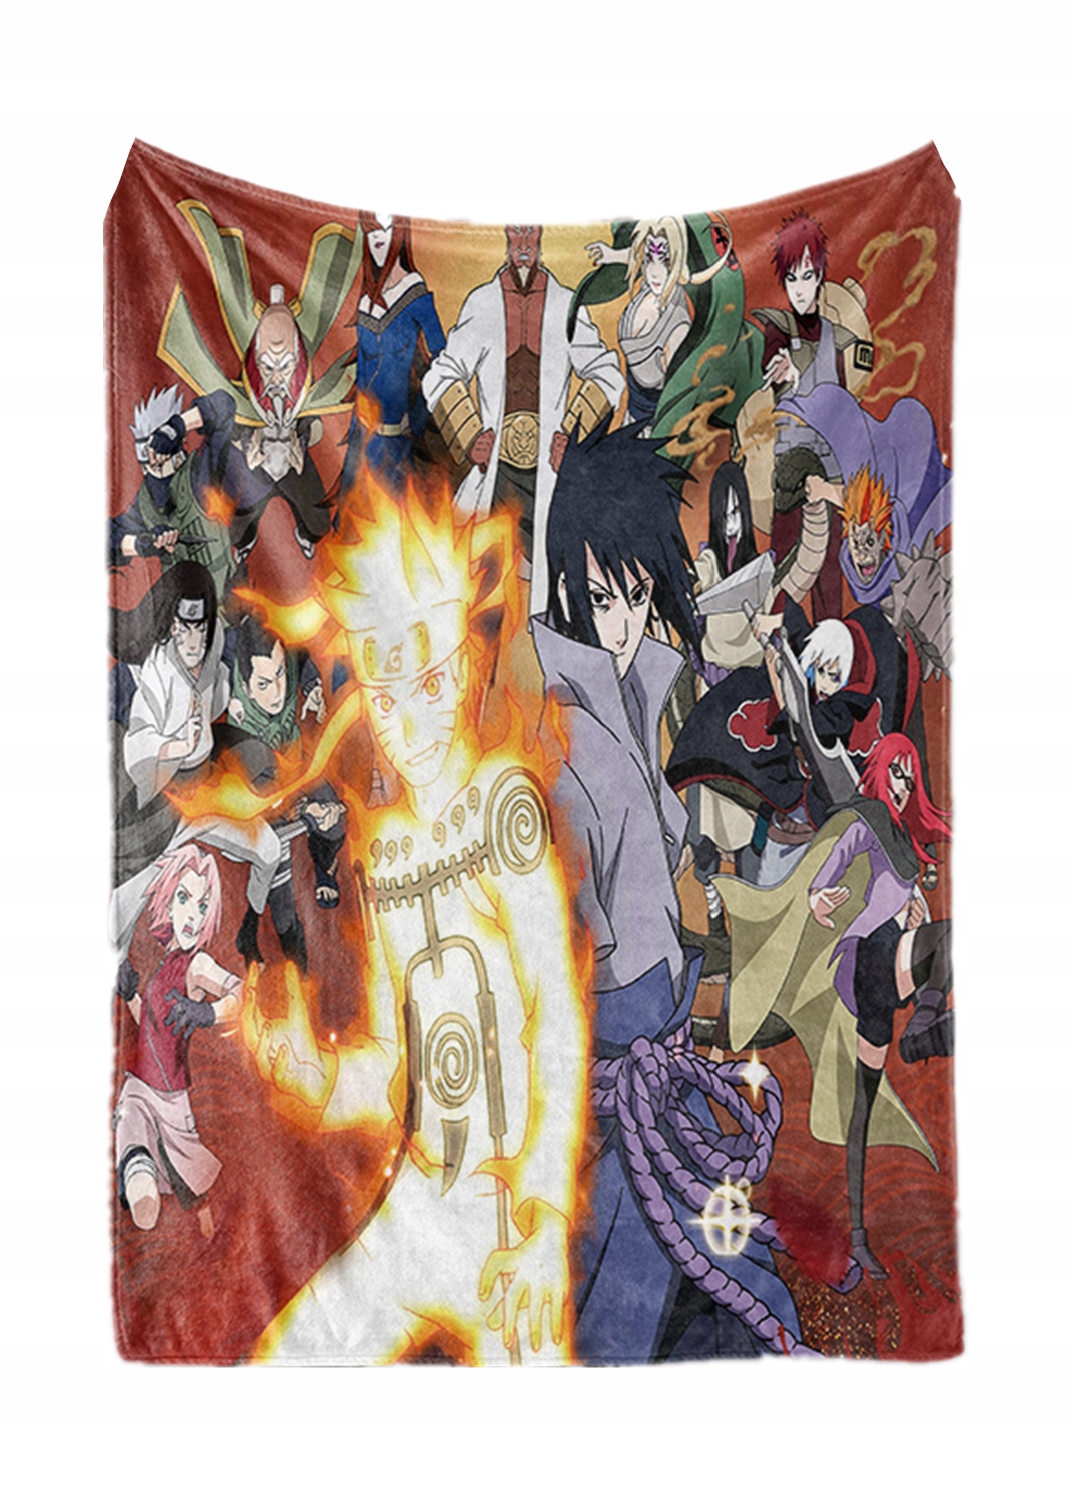 Gruby Anime Koc MŁodzieŻowy Prezent Naruto 100x150 12905212501 Allegropl